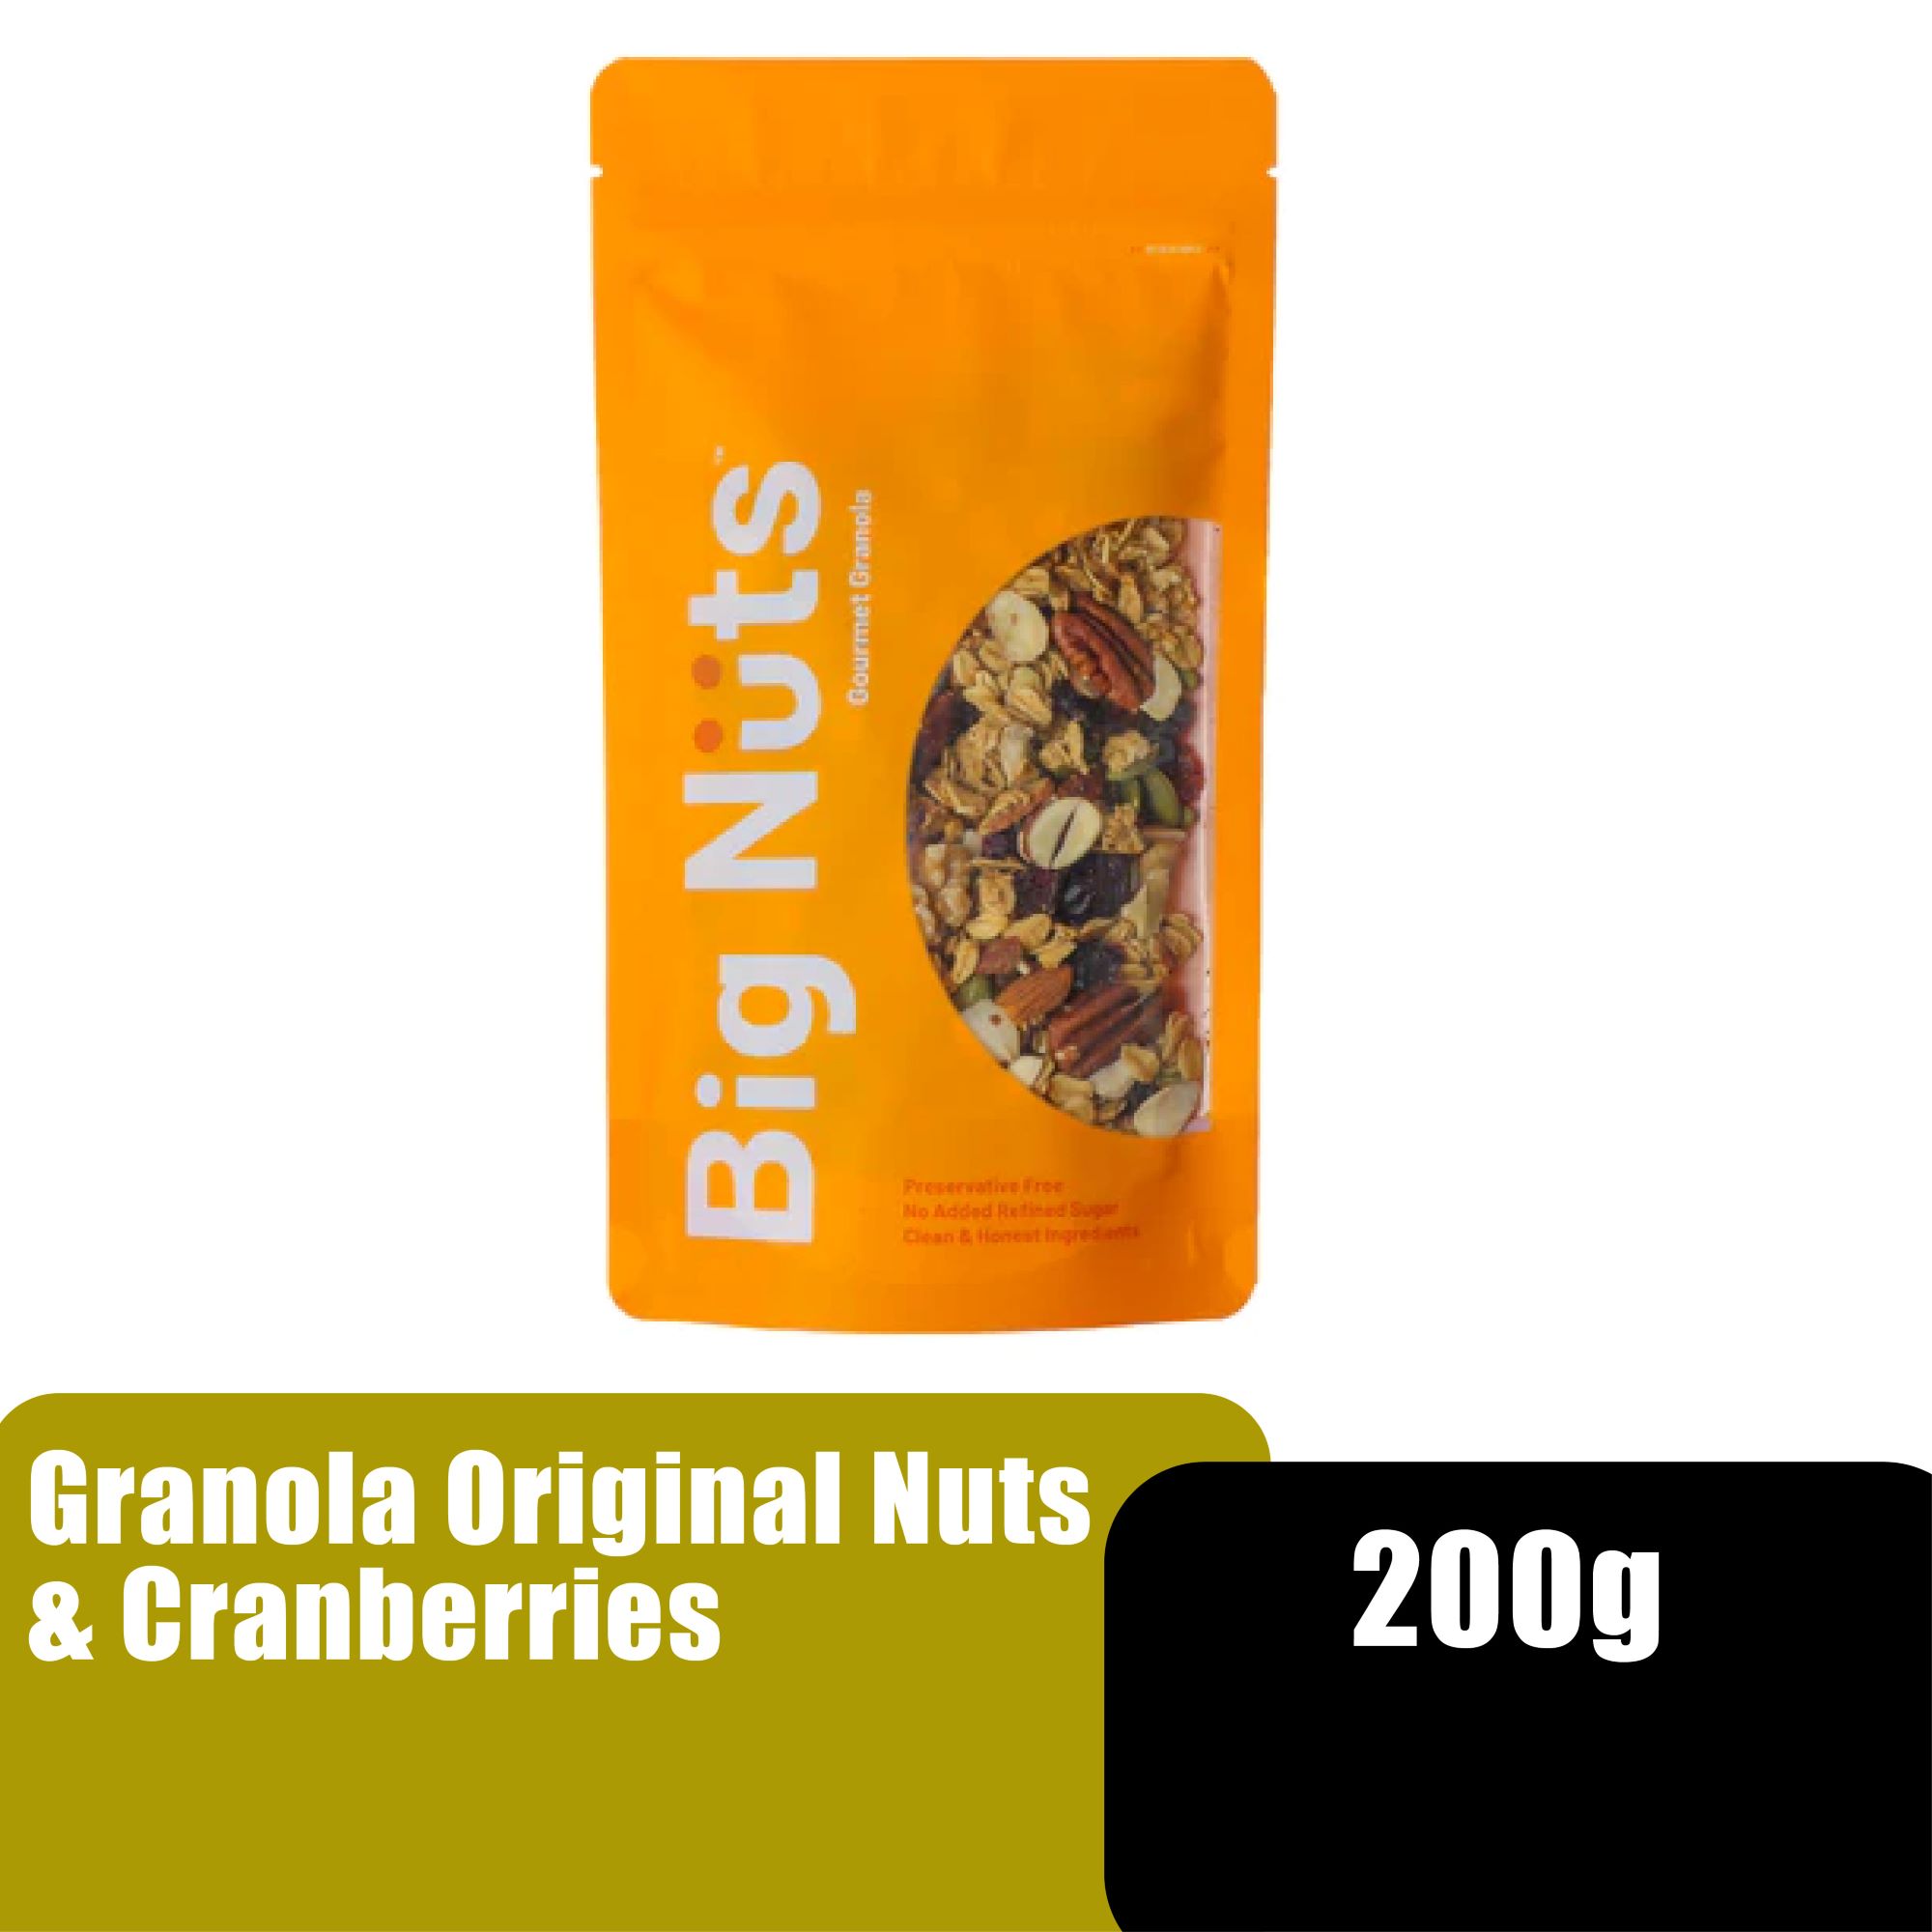 BIG NUTS GRANOLA ORIGINAL NUTS & CRANBERRIES 200G